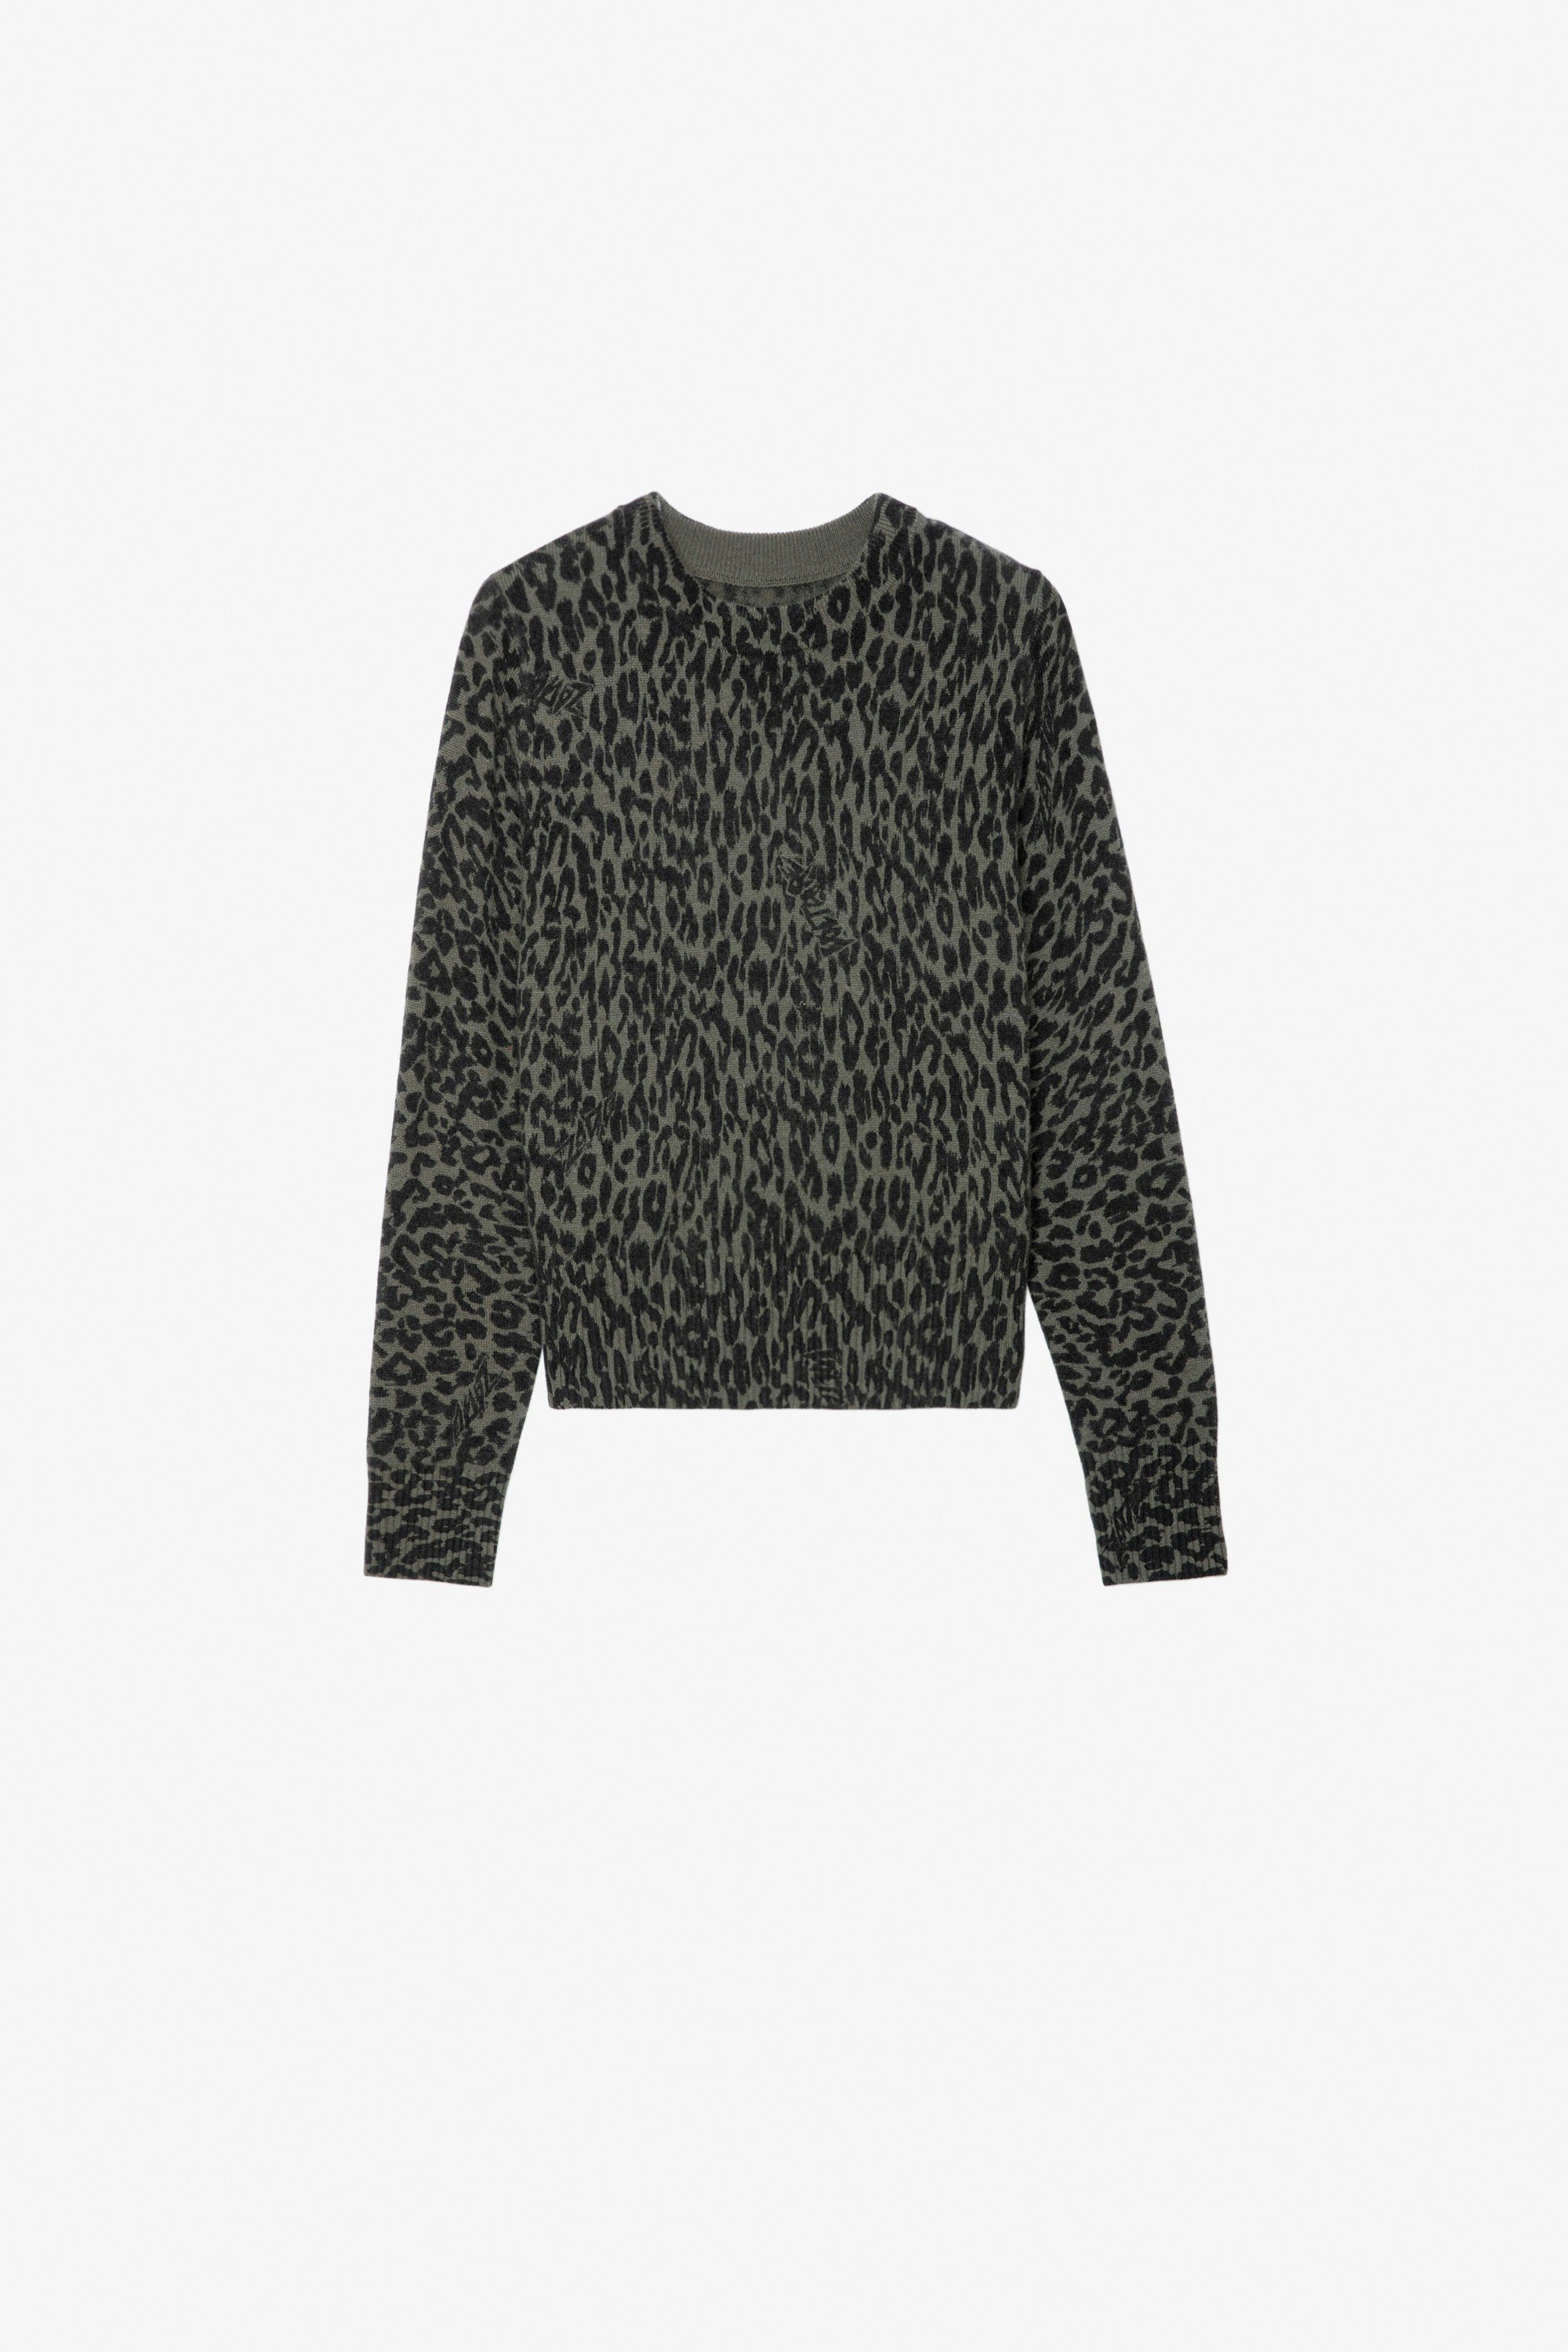 Pullover Reglis für Mädchen Pullover aus khakifarbenem Strick mit Leoparden-Print für Mädchen.